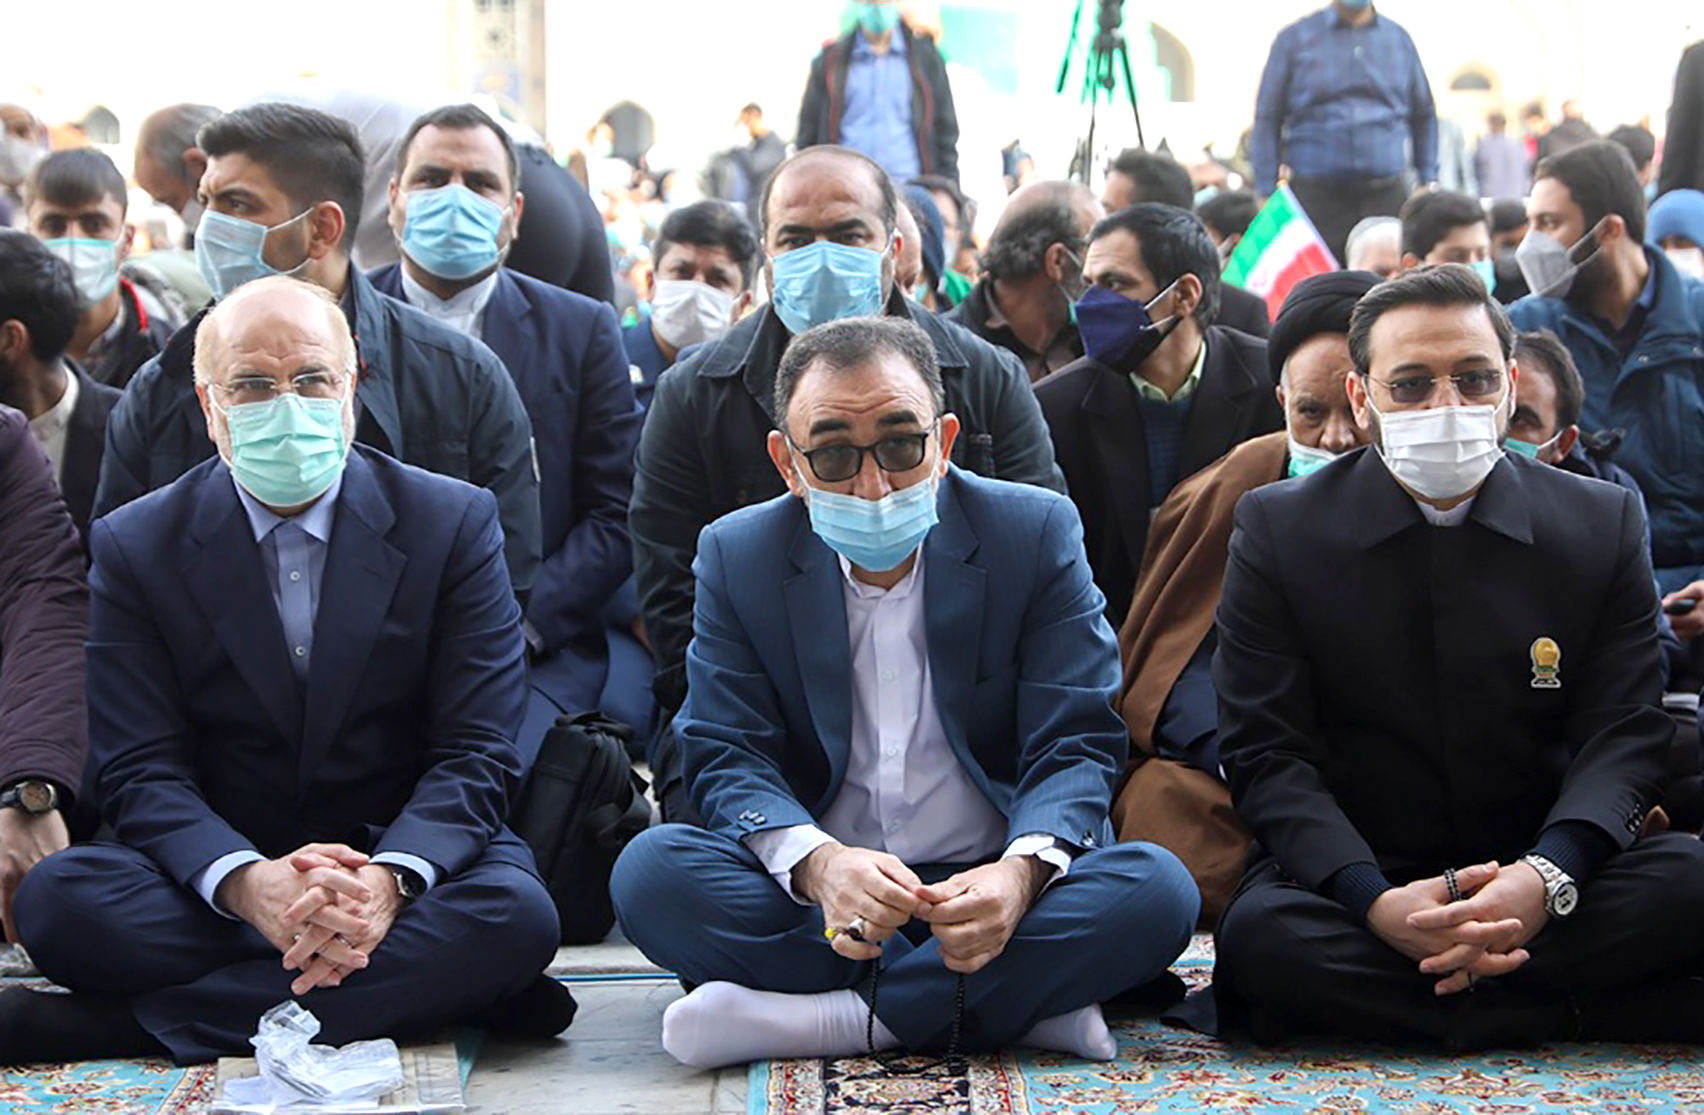 ادامه مسیر انقلاب اسلامی، بدون حضور ملت قابل تصور نیست